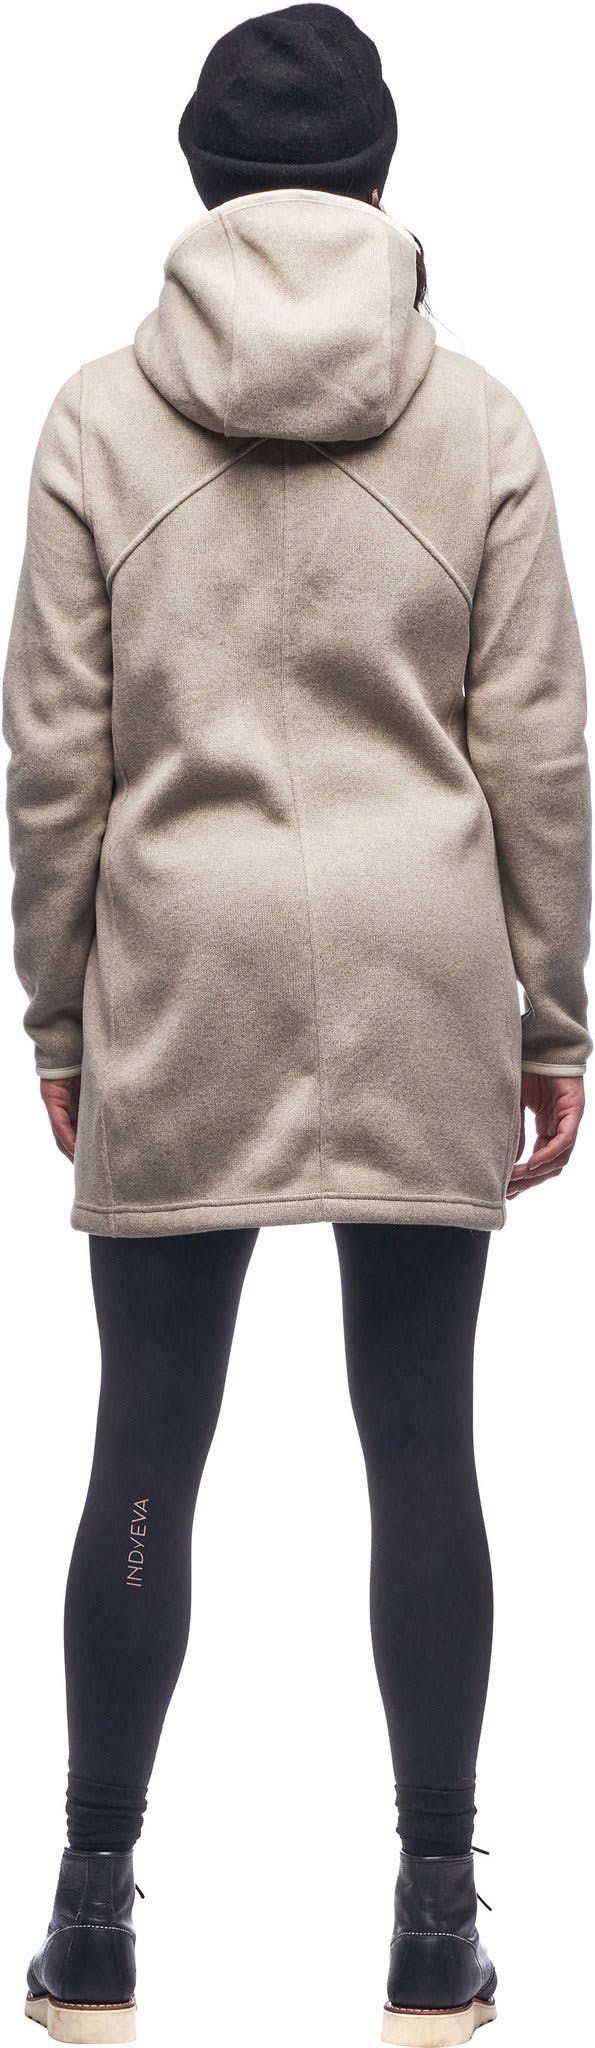 Numéro de l'image de la galerie de produits 2 pour le produit Manteau long à capuche thermale Naoko - Femme